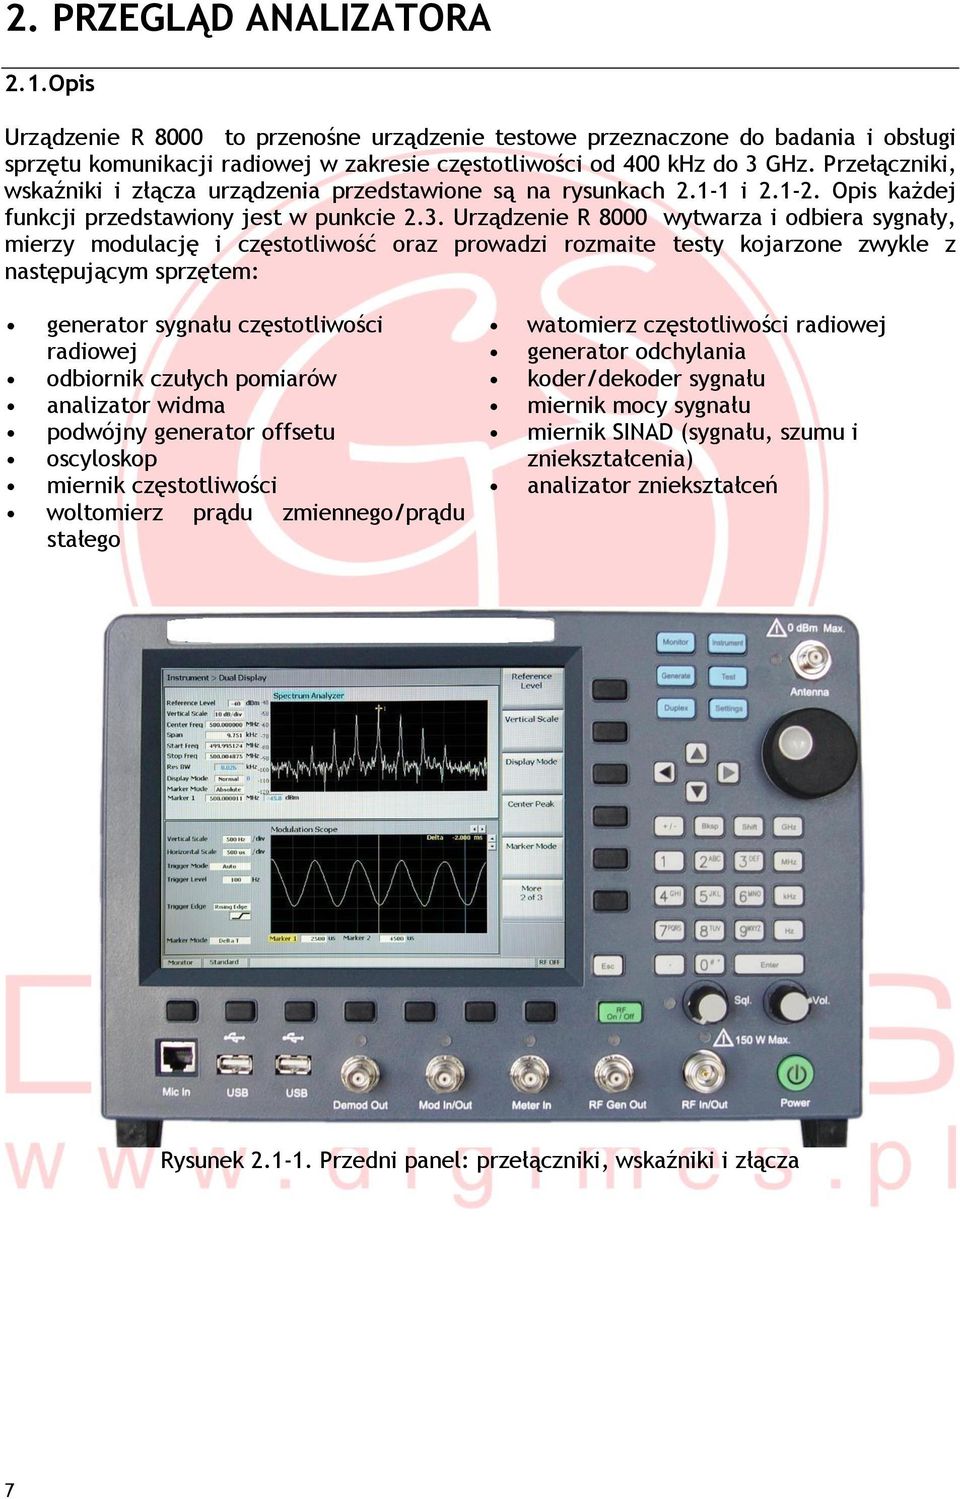 Urządzenie R 8000 wytwarza i odbiera sygnały, mierzy modulację i częstotliwość oraz prowadzi rozmaite testy kojarzone zwykle z następującym sprzętem: generator sygnału częstotliwości radiowej